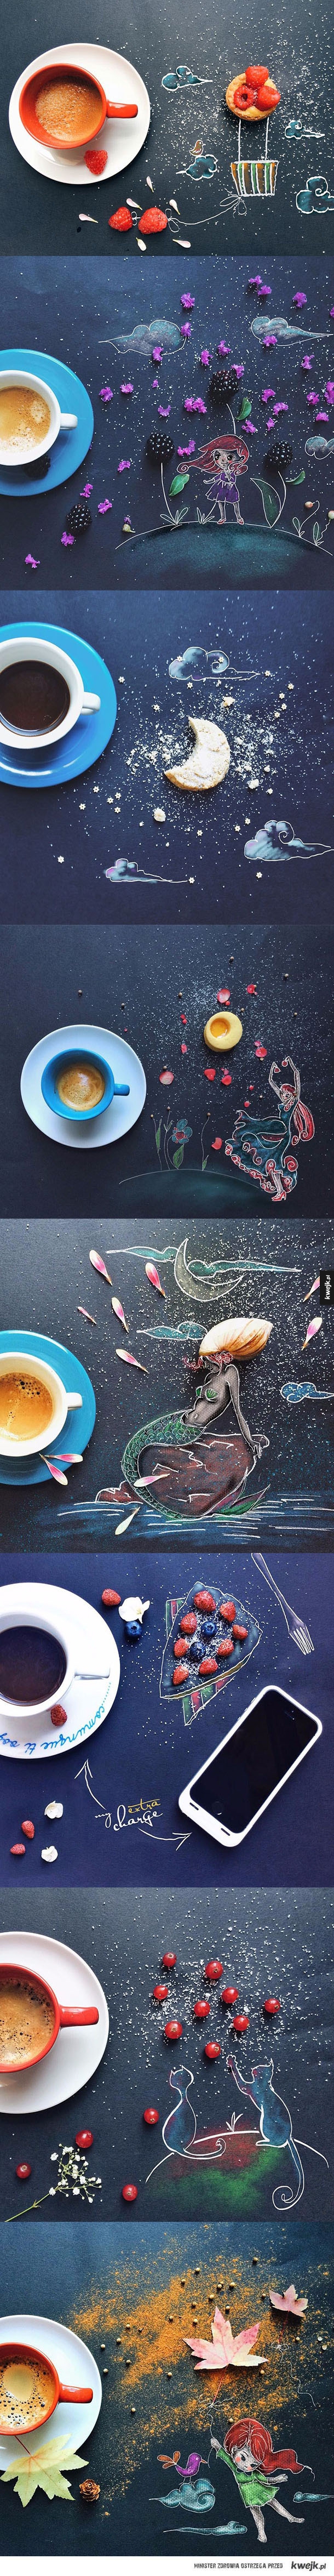 Piękna sztuka przy porannej kawie